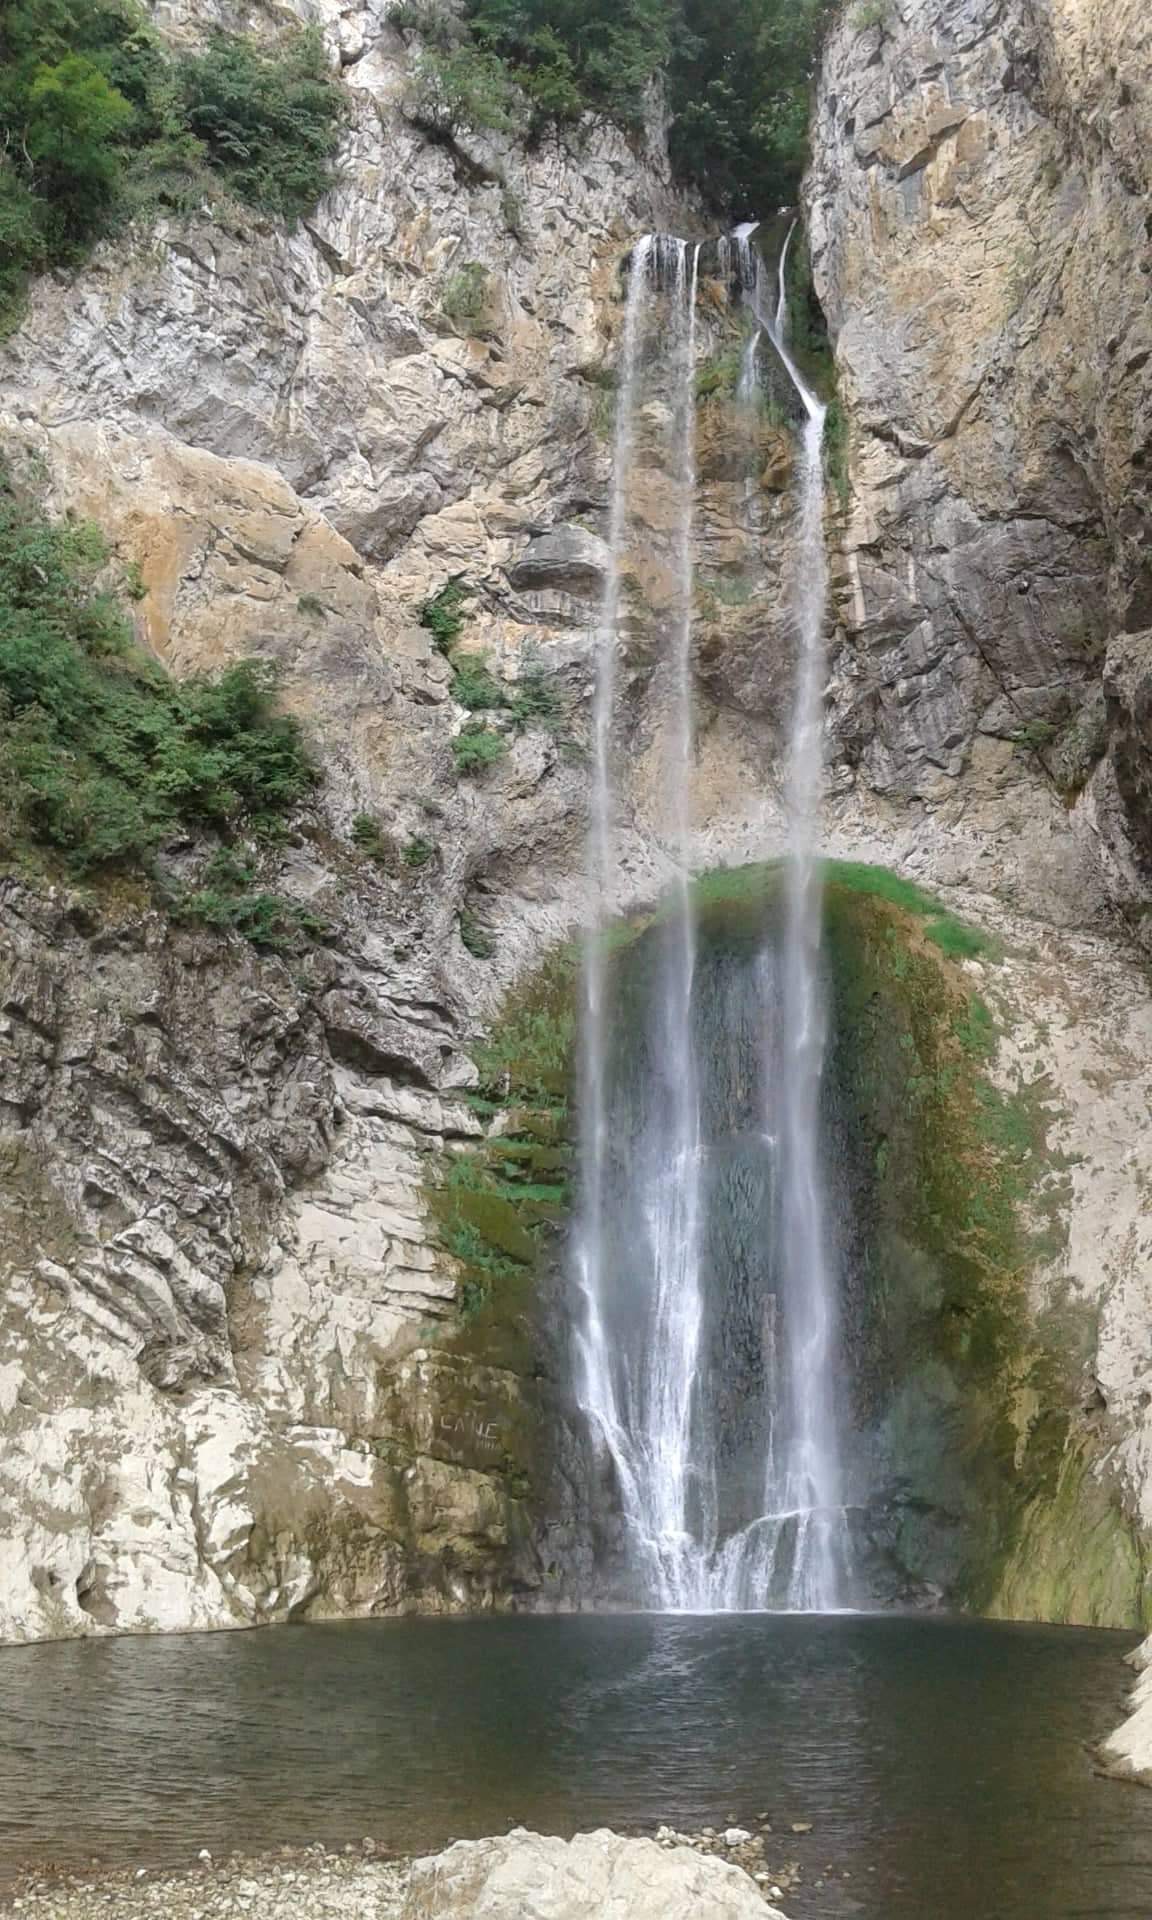 Visit to Bliha Waterfalls